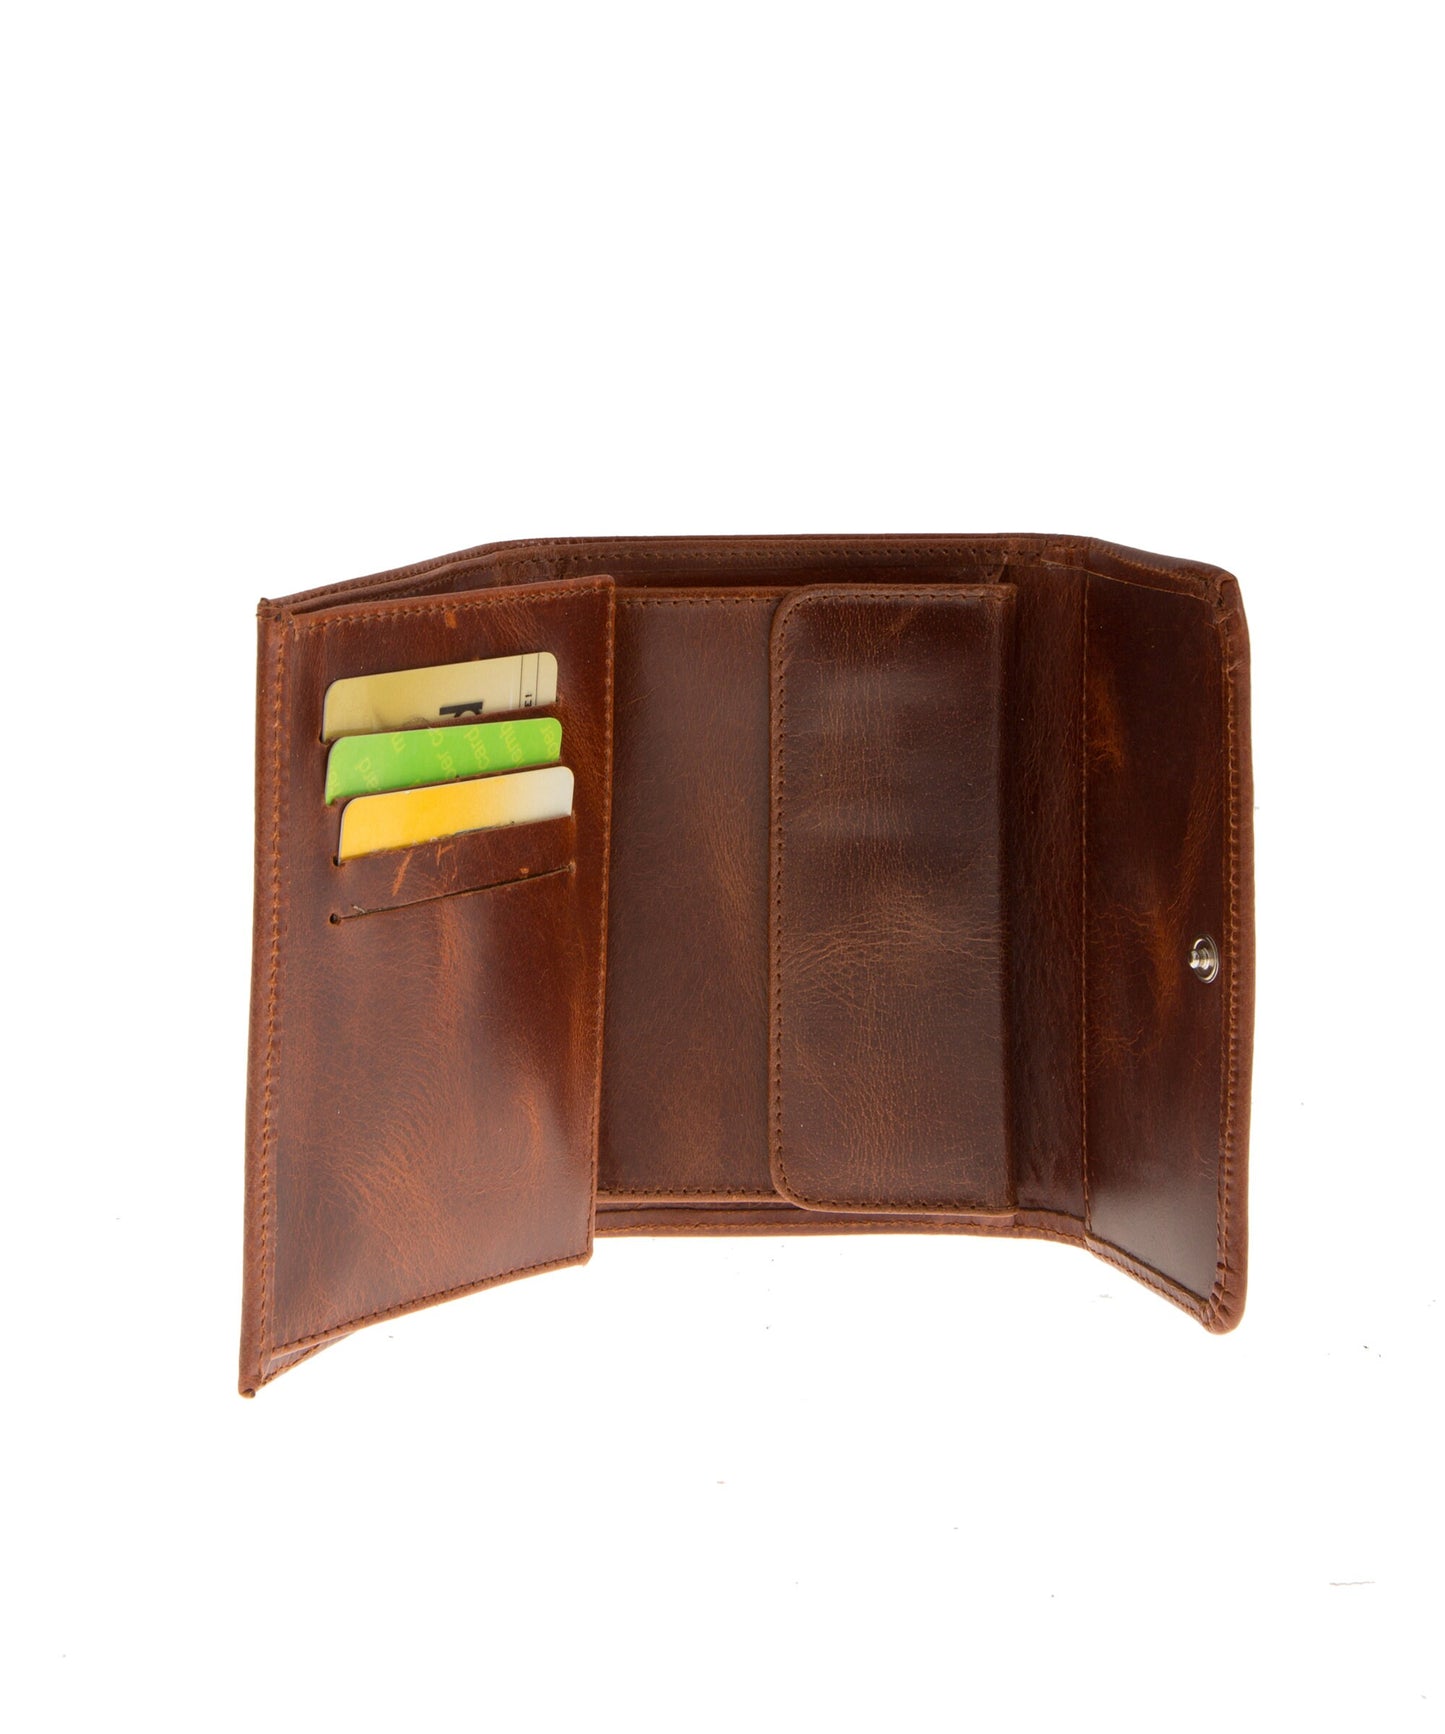 Small woman wallet, minimalist wallet, leather wallet, travel wallet, credit card wallet, trifold wallet, slim wallet